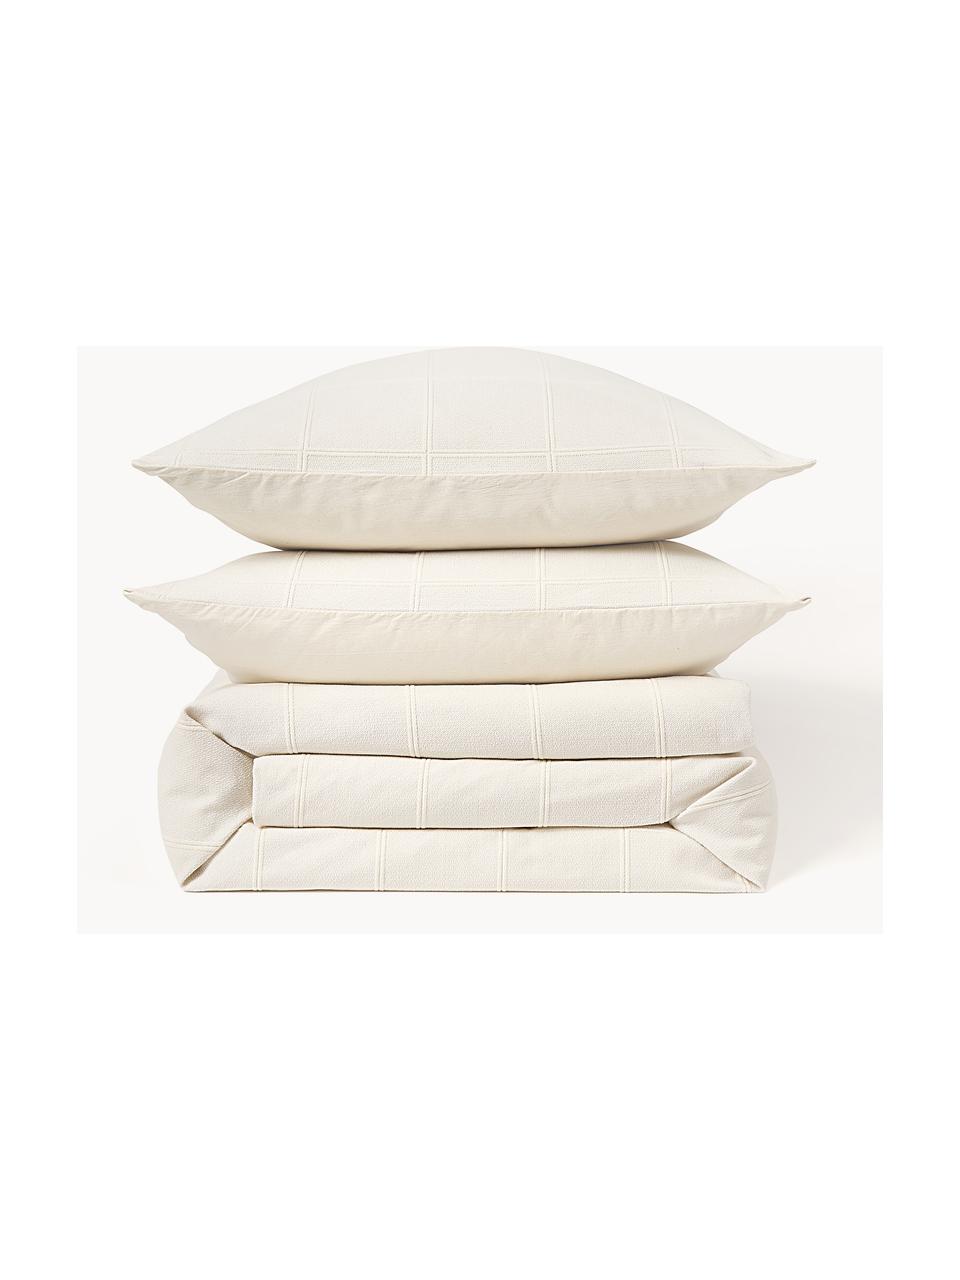 Bettdeckenbezug Vivienne mit getuftetem Karo-Muster, Vorderseite: Off White
Rückseite: Cremeweiss, B 200 x L 200 cm